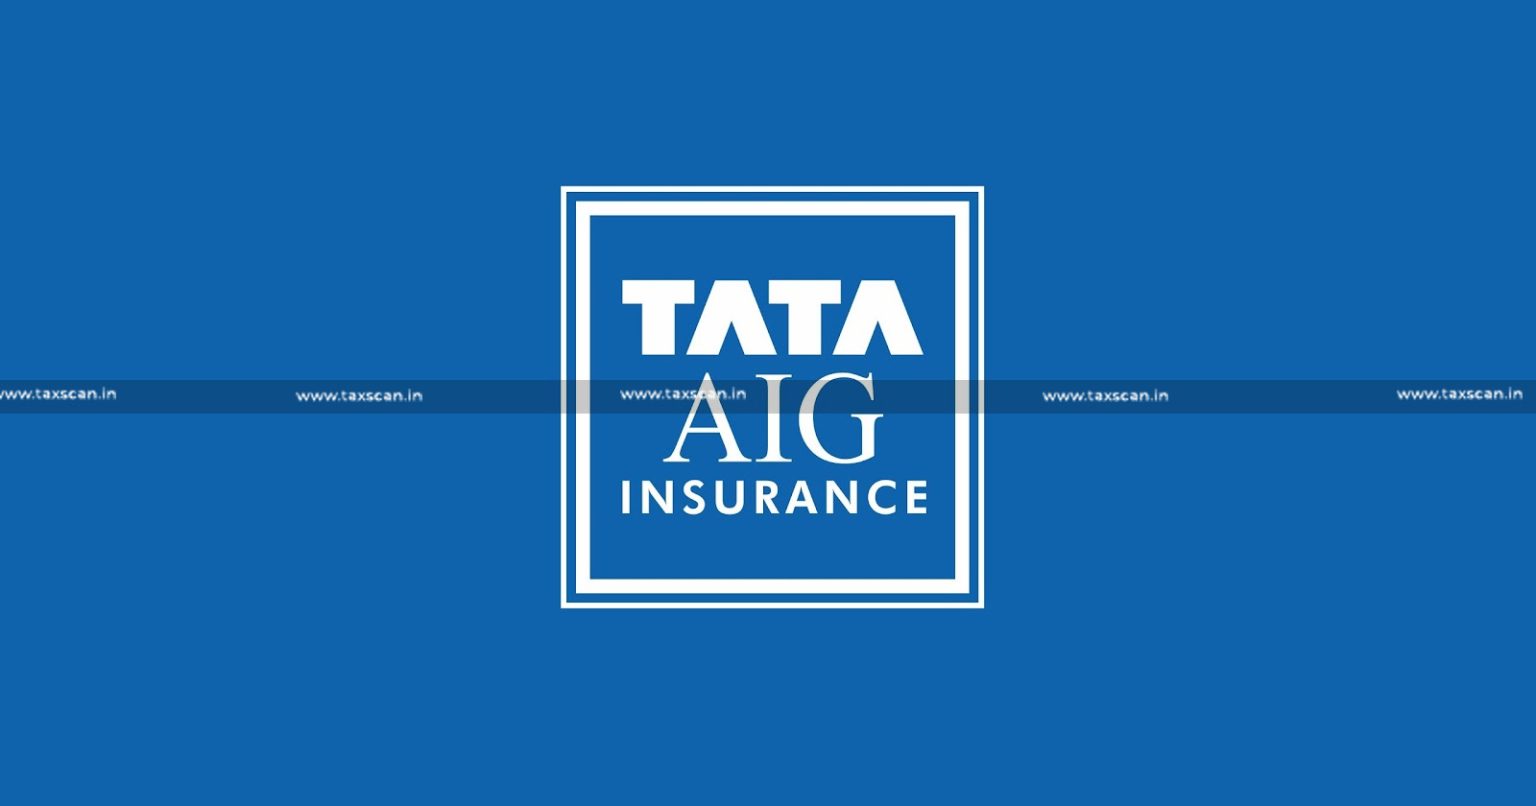 Tata AIG - Tata - Denial Service Tax Credit - CENVAT credit Eligibility - Service Tax - CESTAT - taxscan